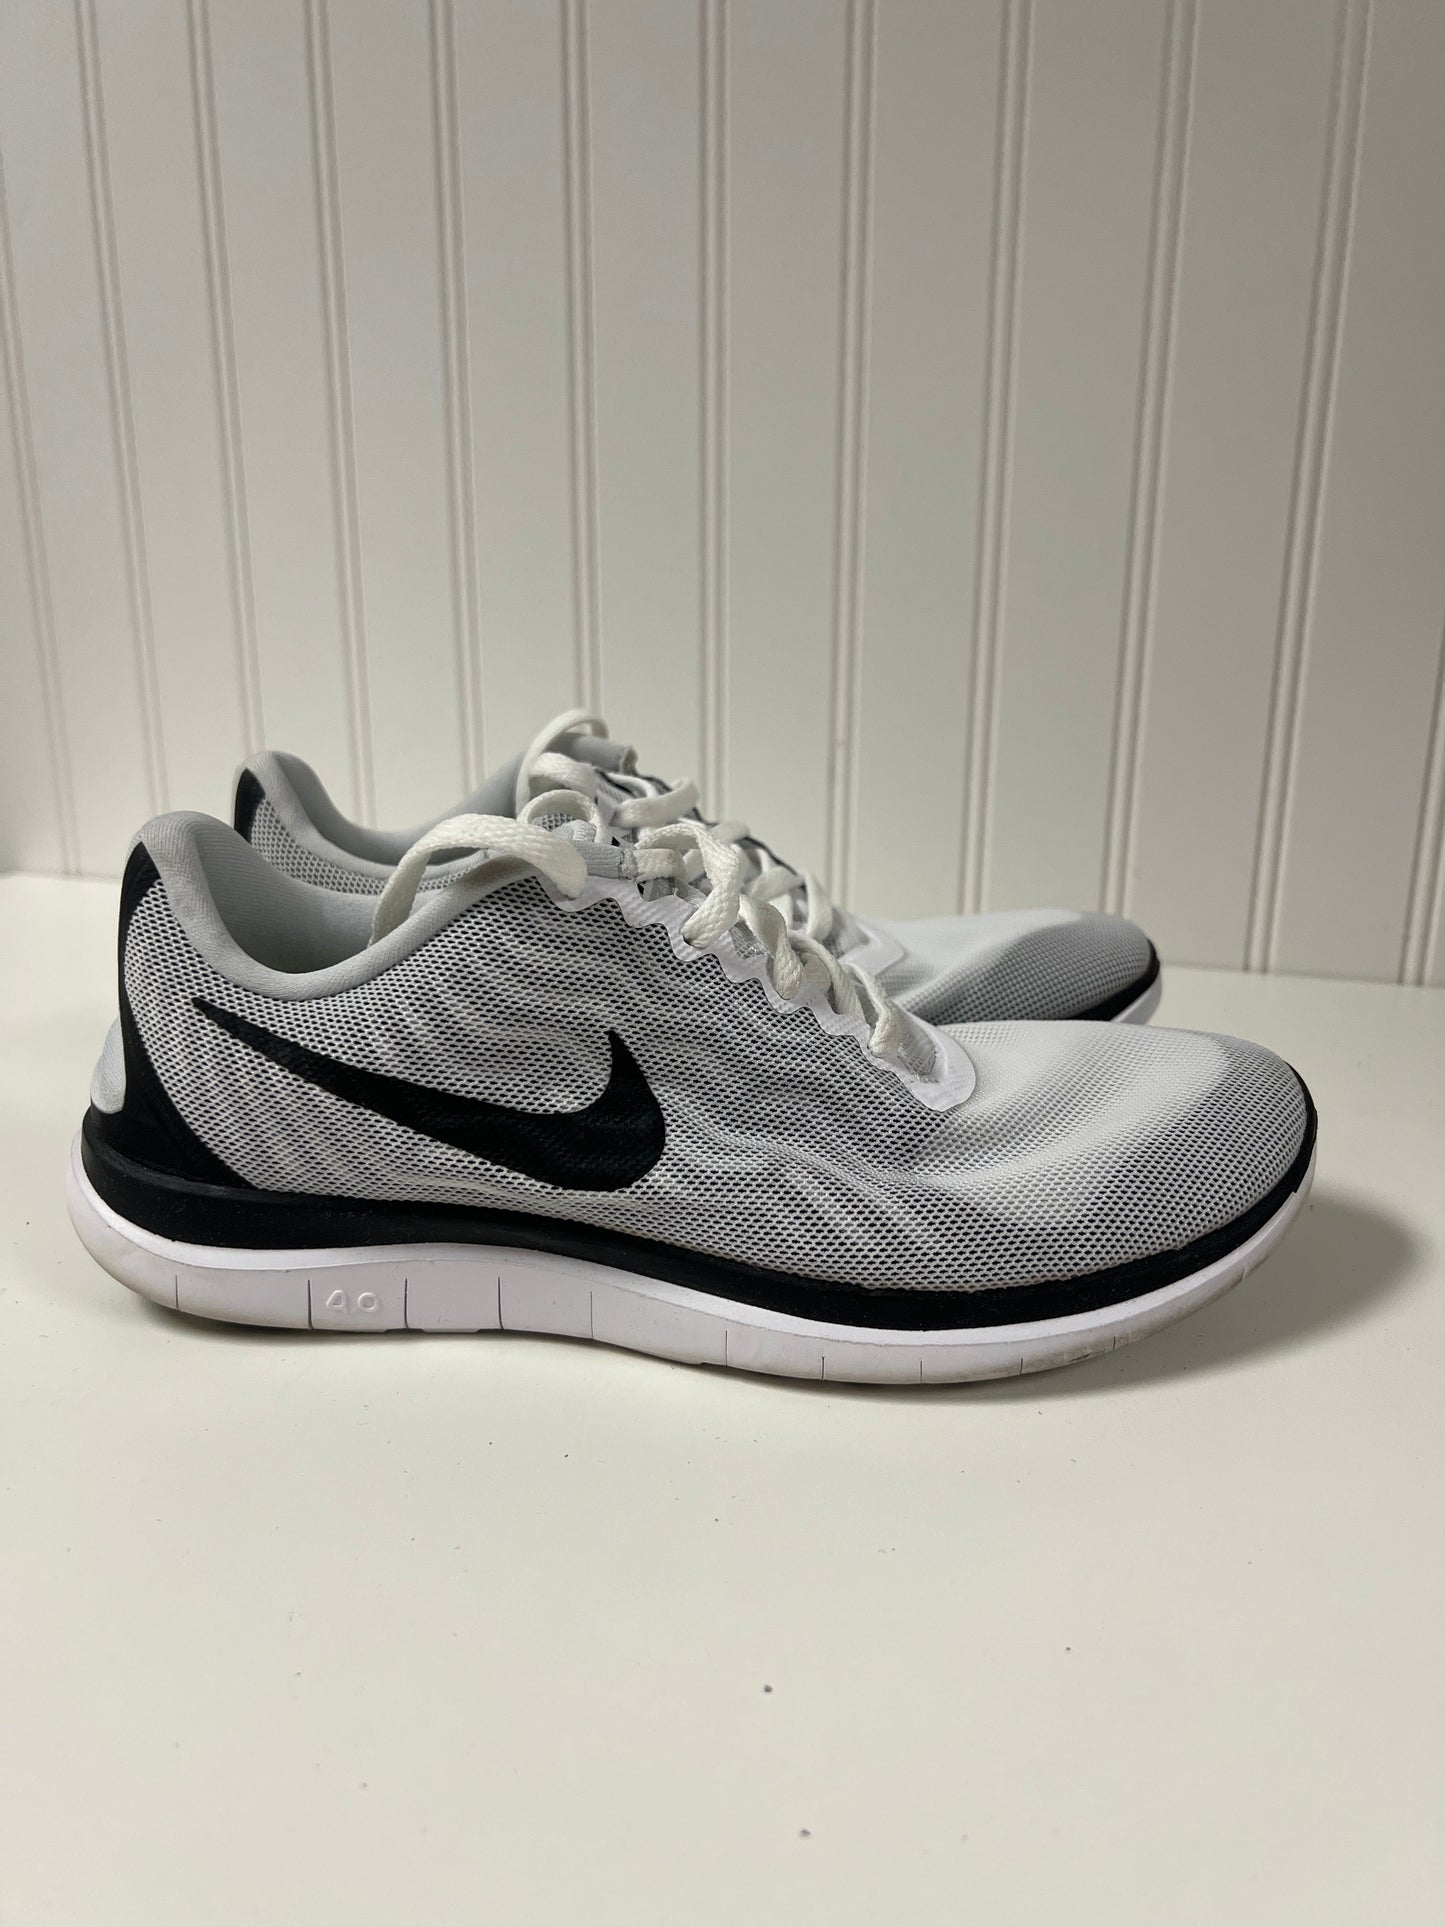 Black & White Shoes Athletic Nike, Size 7